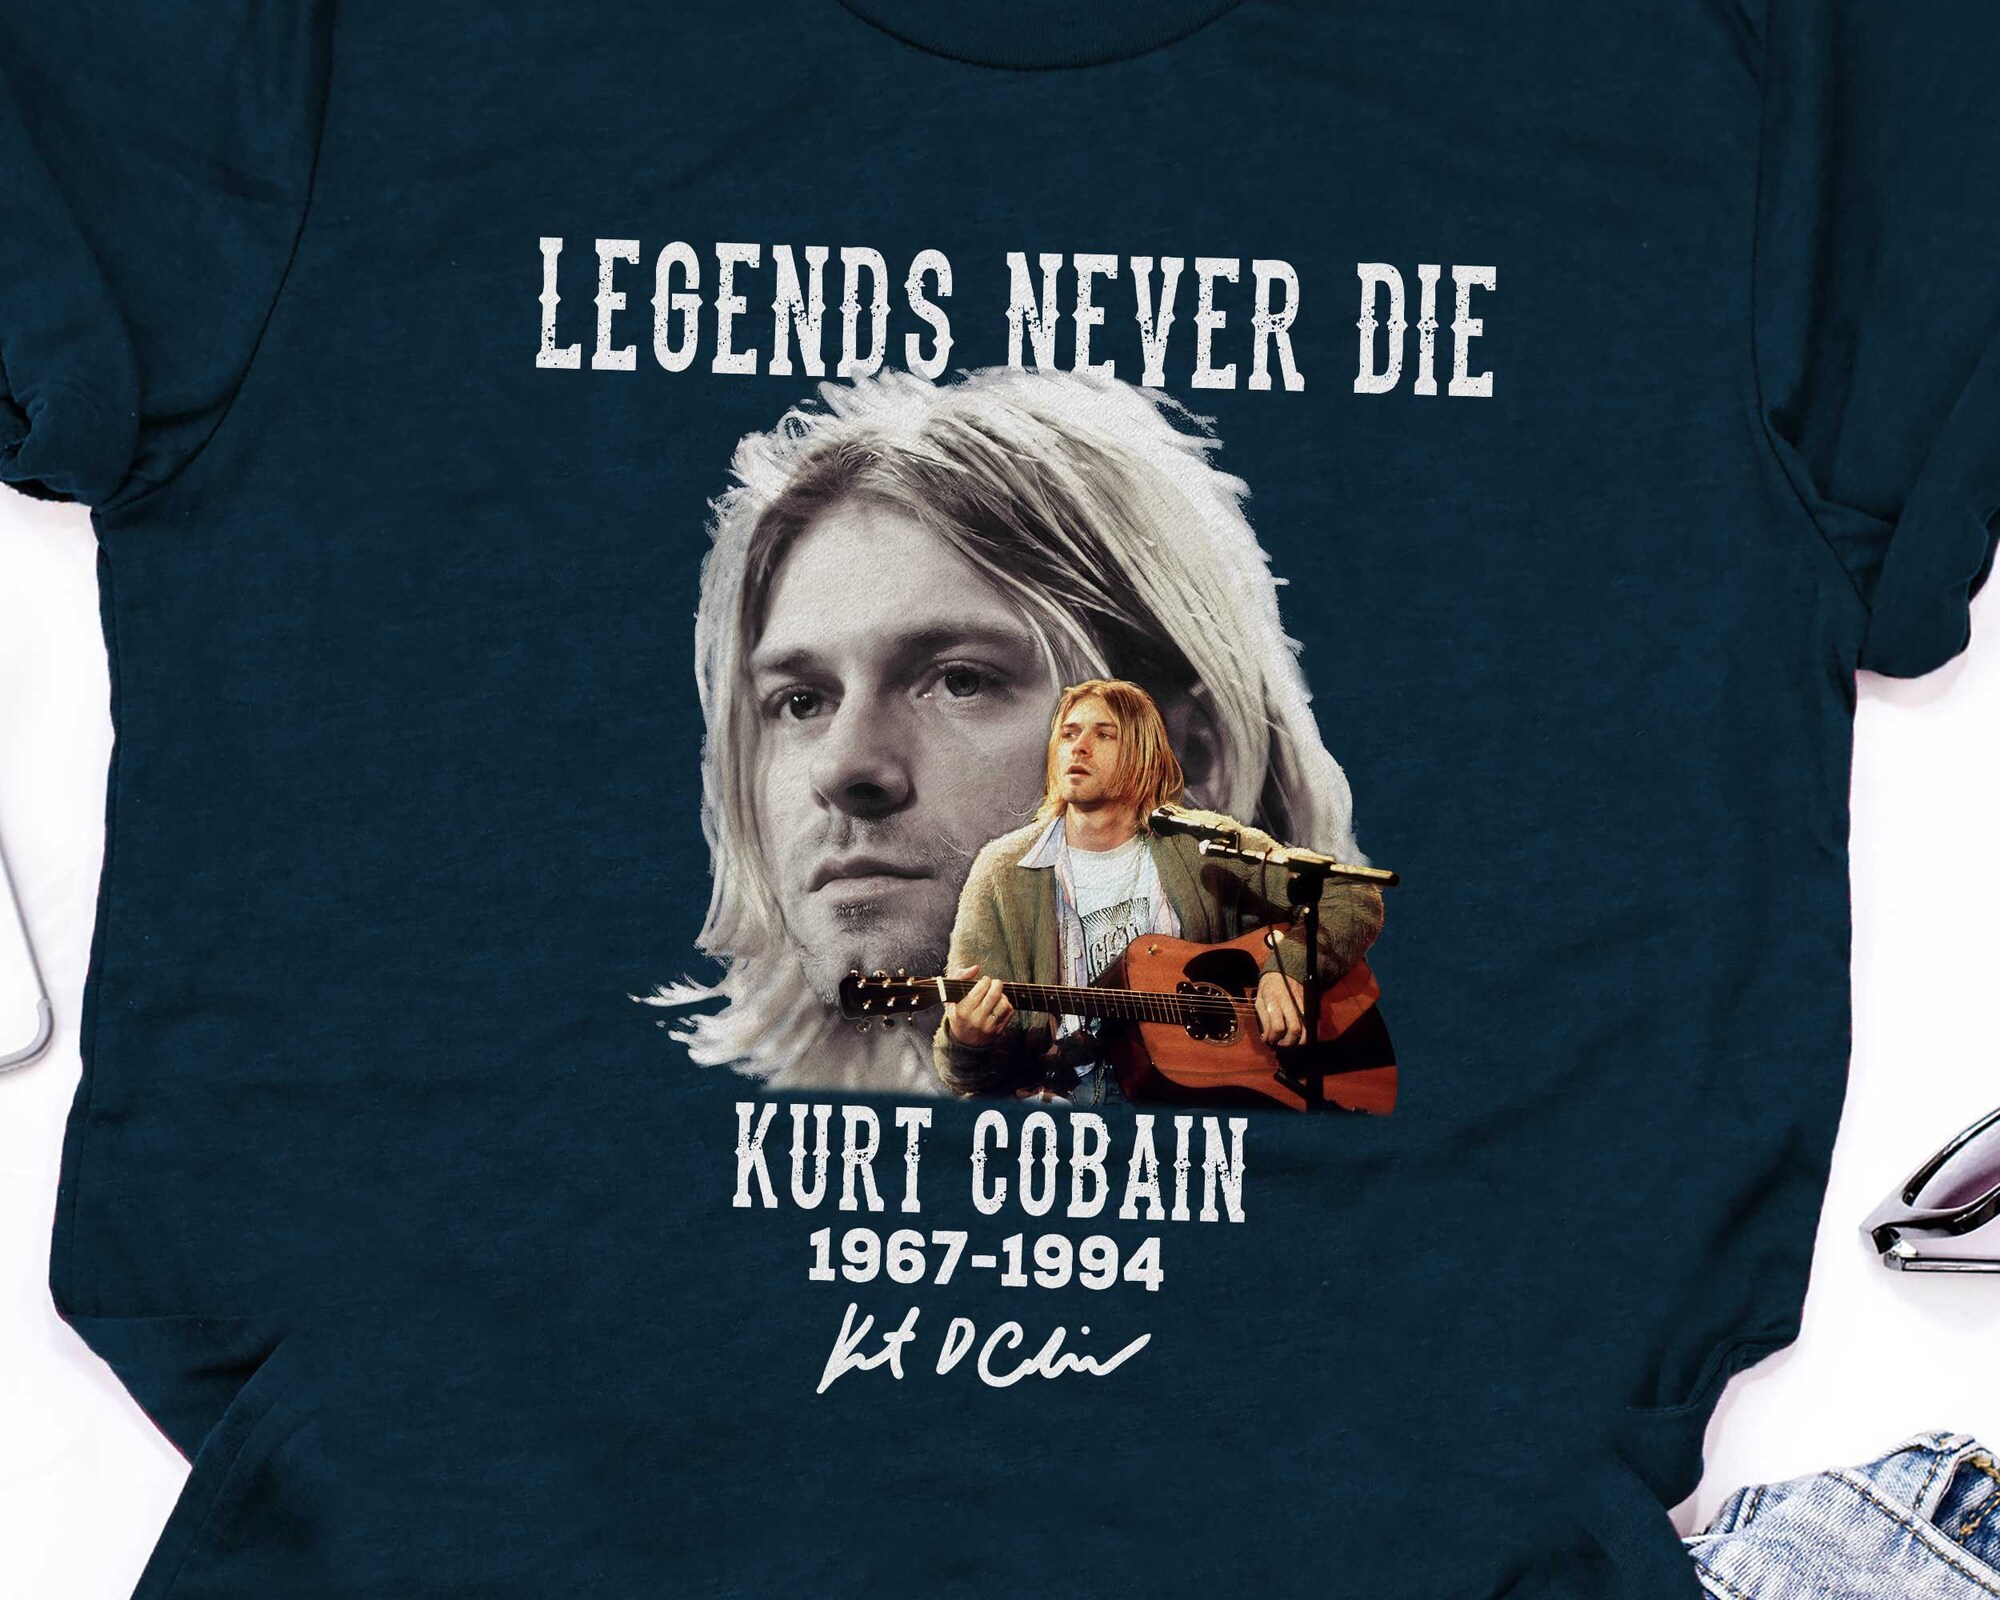 legend never die kurt cobain 1967-1994, kurt cobain face shirt